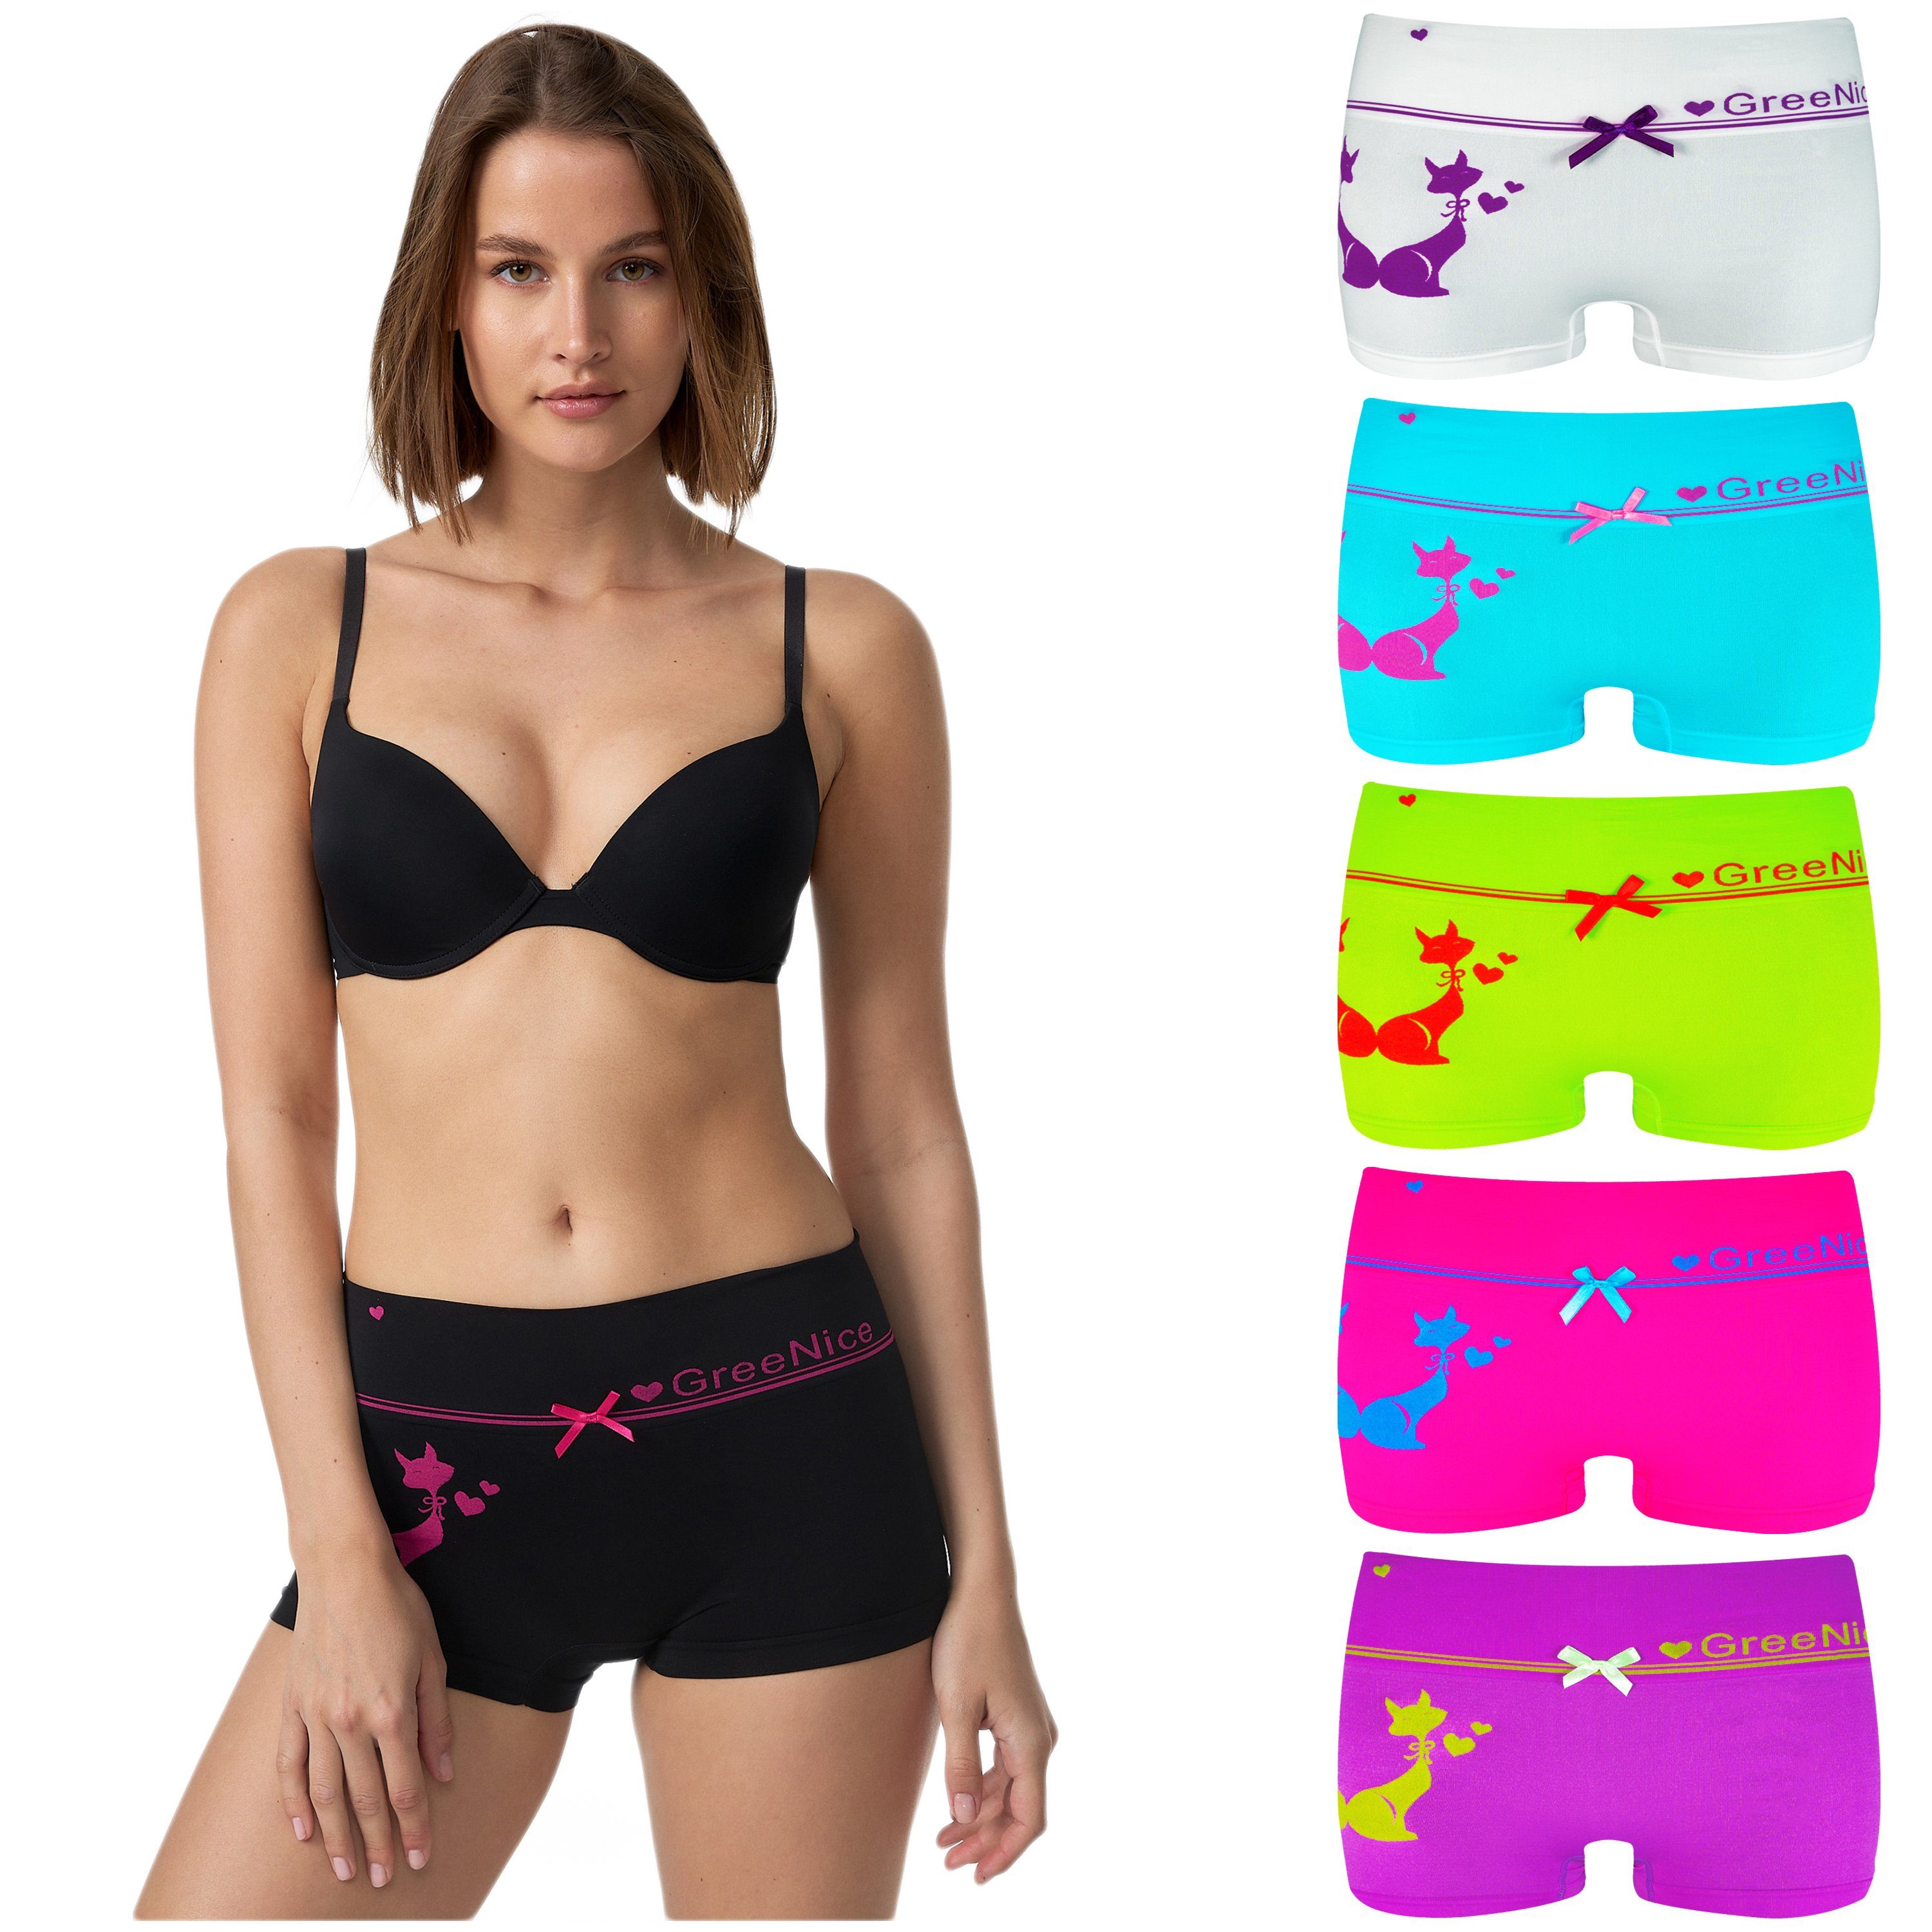 Fabio Farini Panty Damen Hotpants Unterhosen - Frauen Boxershorts Seamless  (Spar-Set, 6-St) angenehmes Tragegefühl ohne Nähte, zufällig ausgewählte  Farben